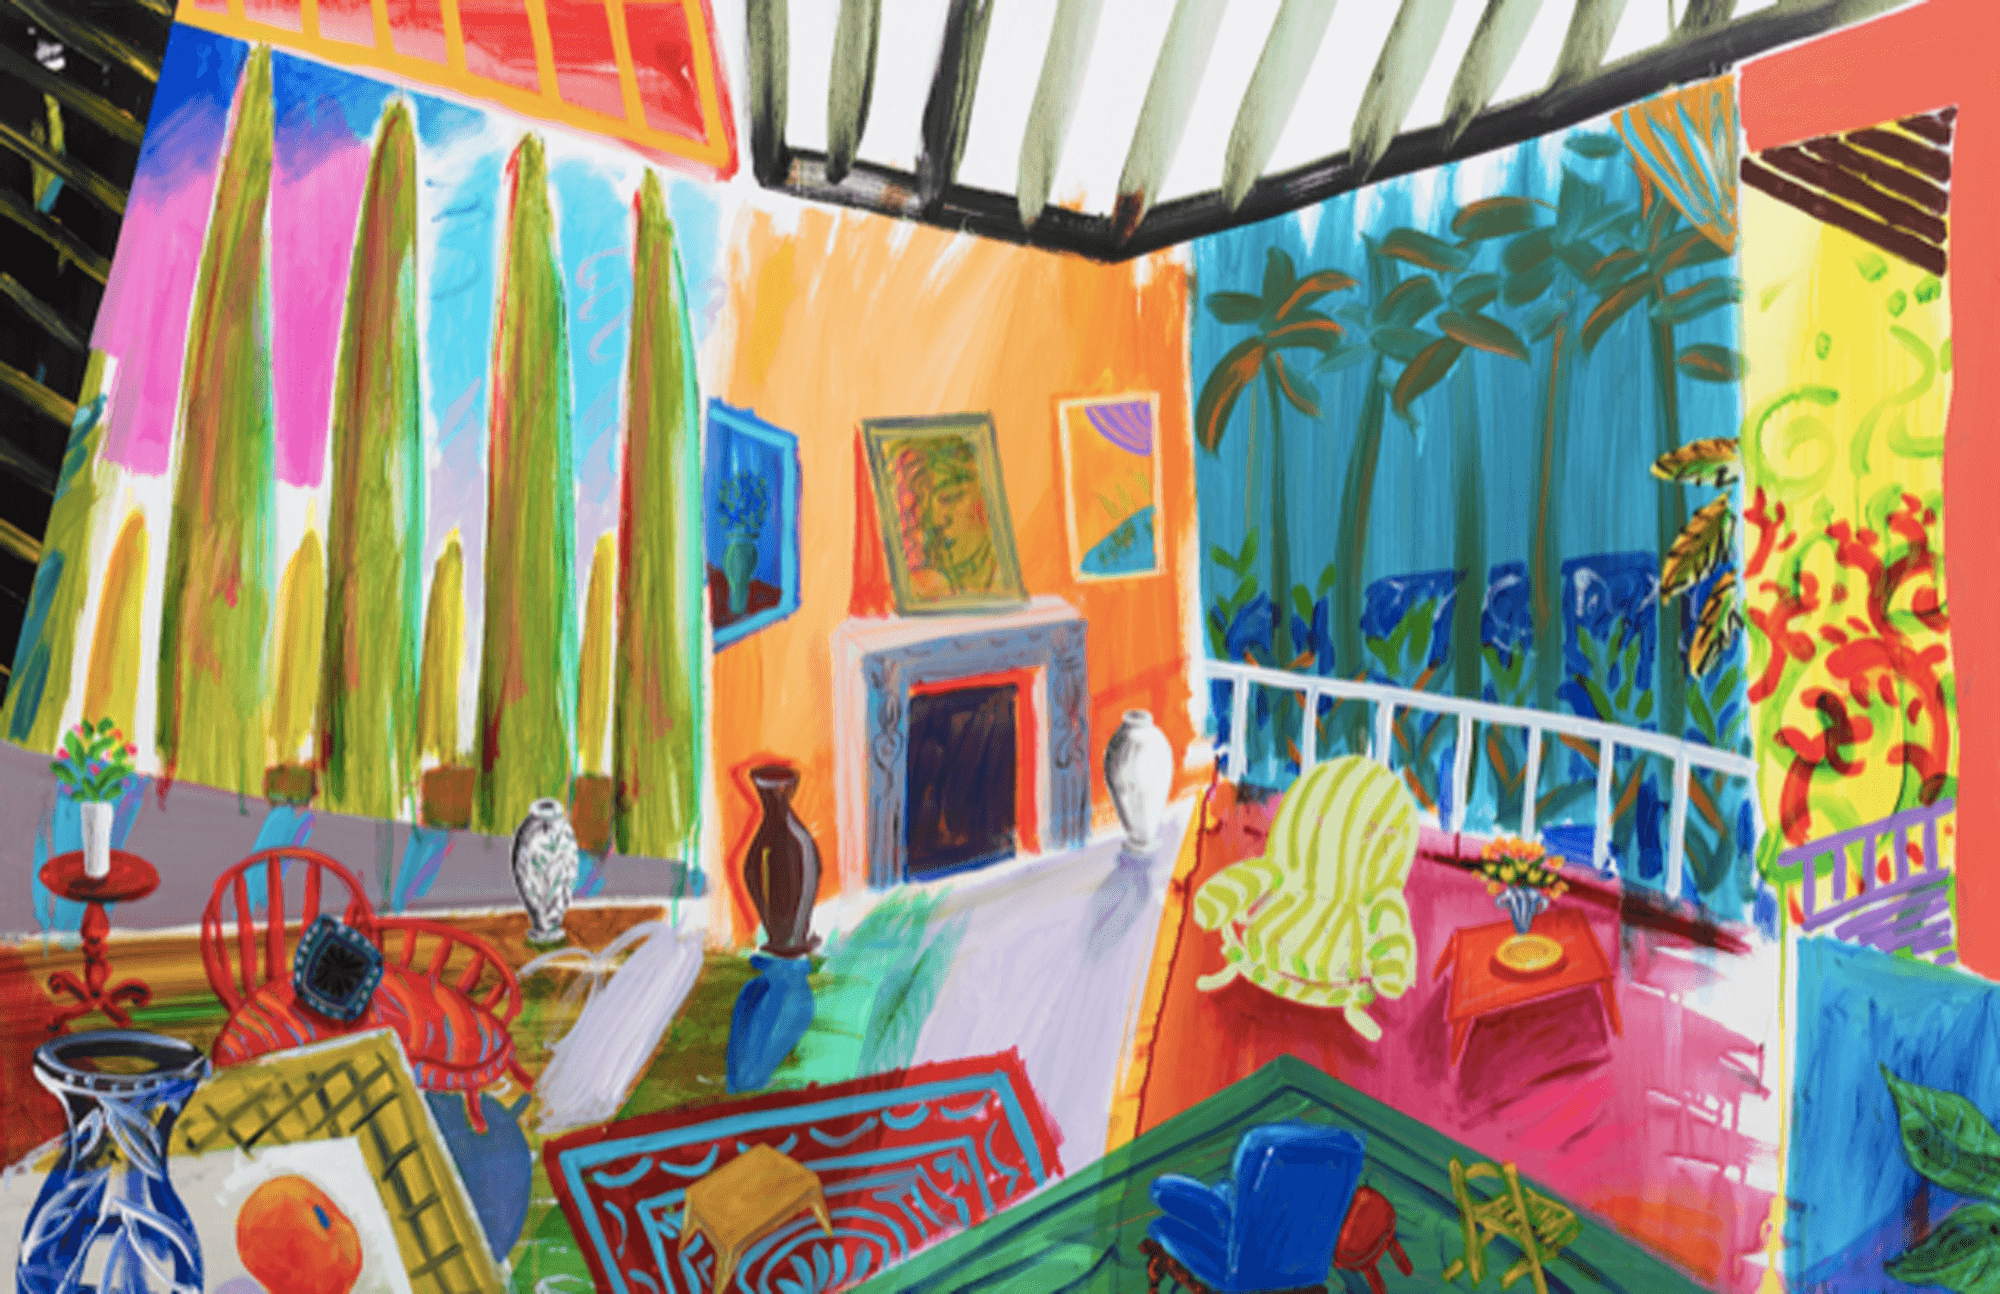 Amanda Watt: Hockneys View